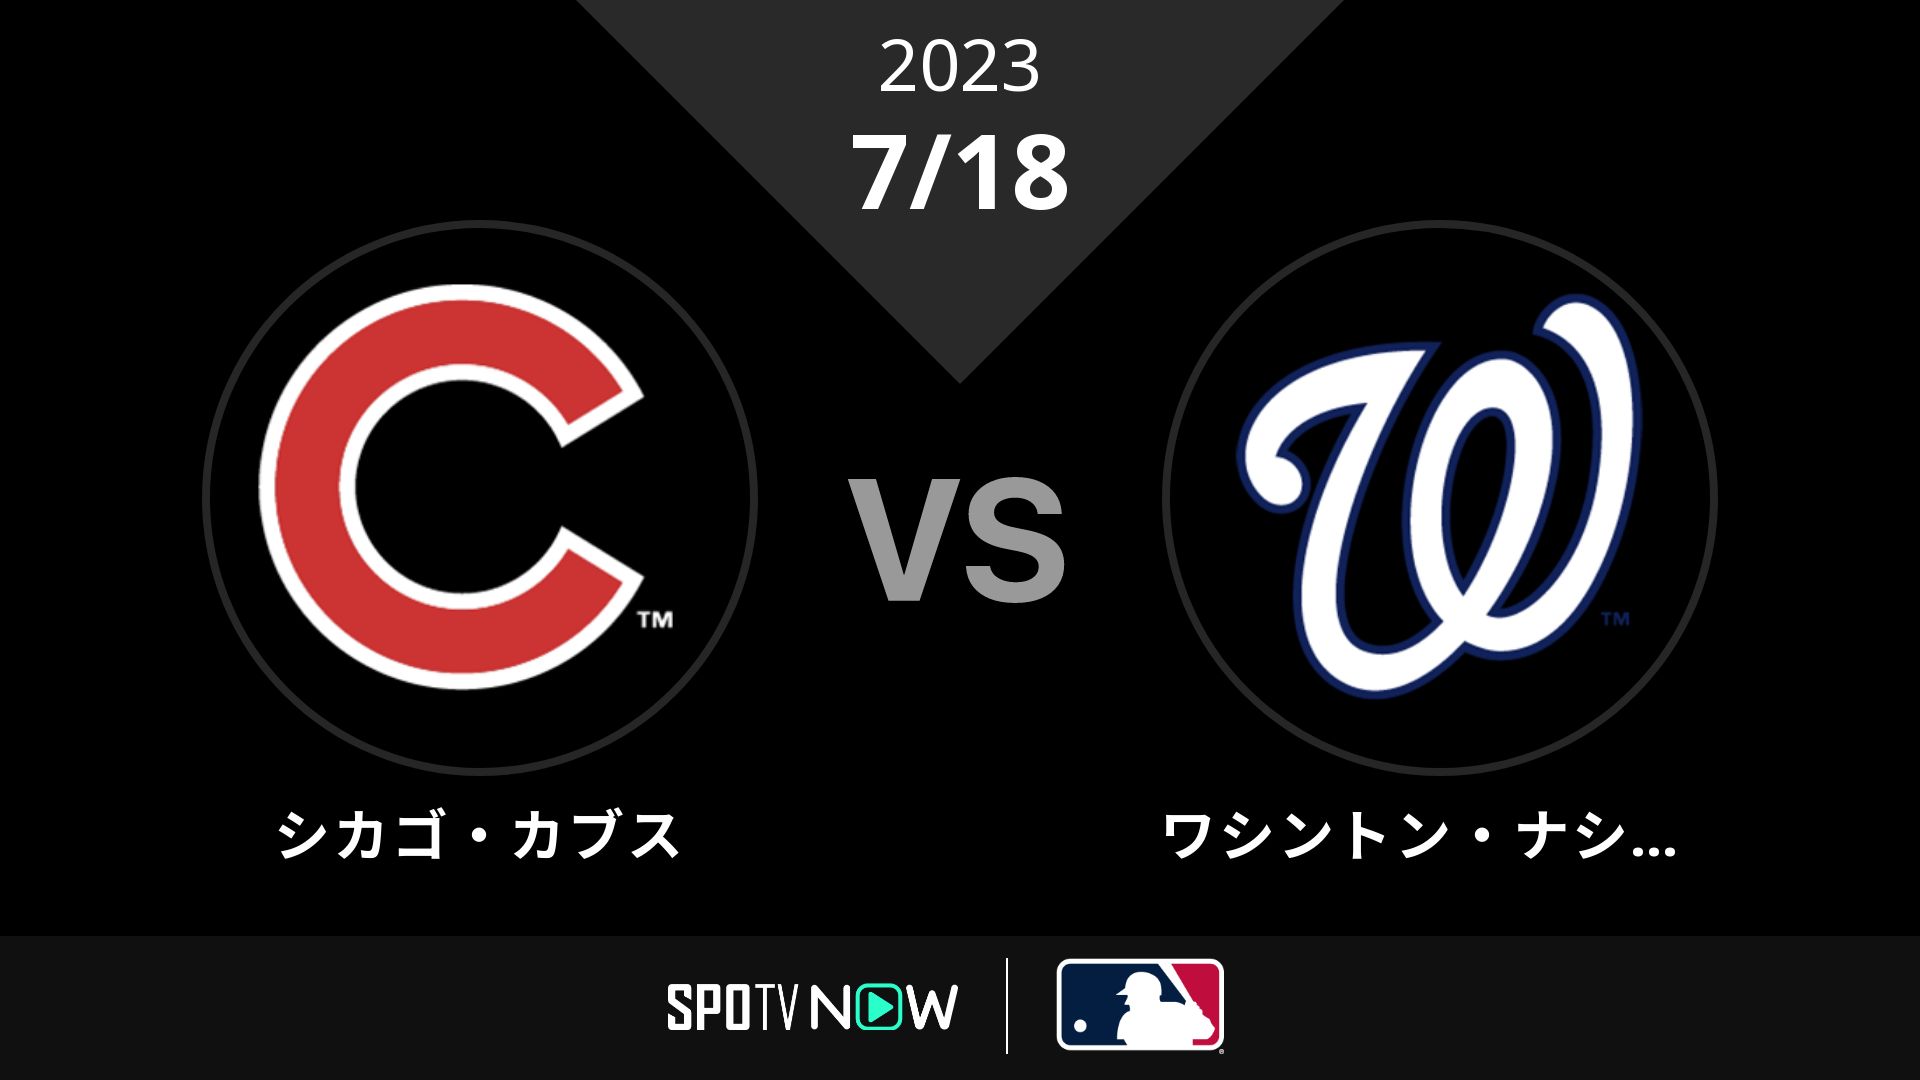 2023/7/18 カブス vs ナショナルズ [MLB]